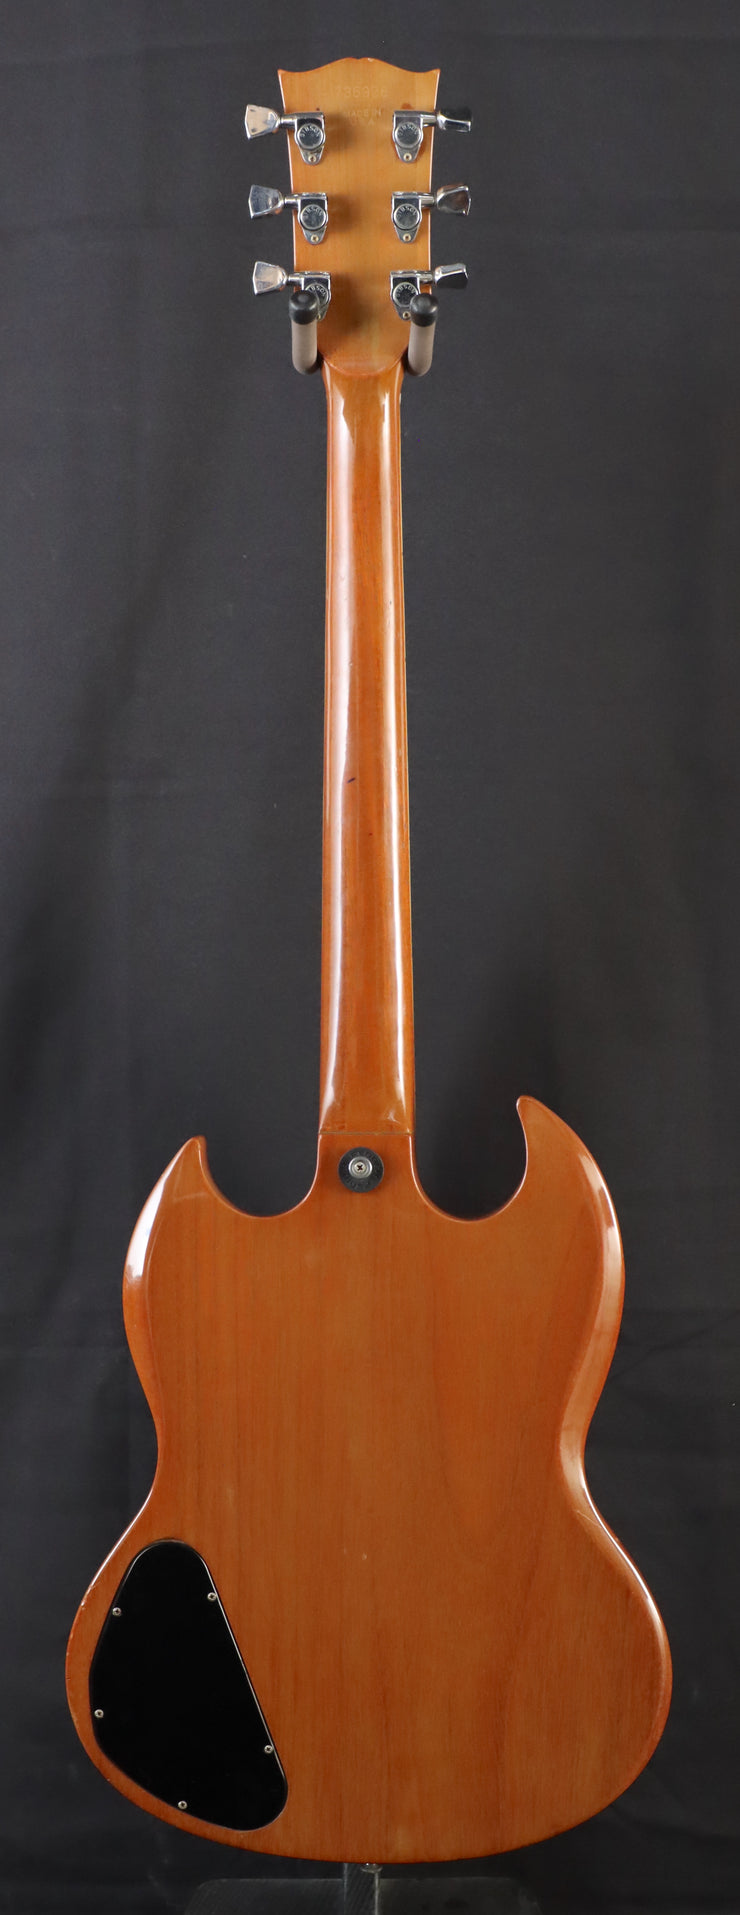 1974 Gibson SG